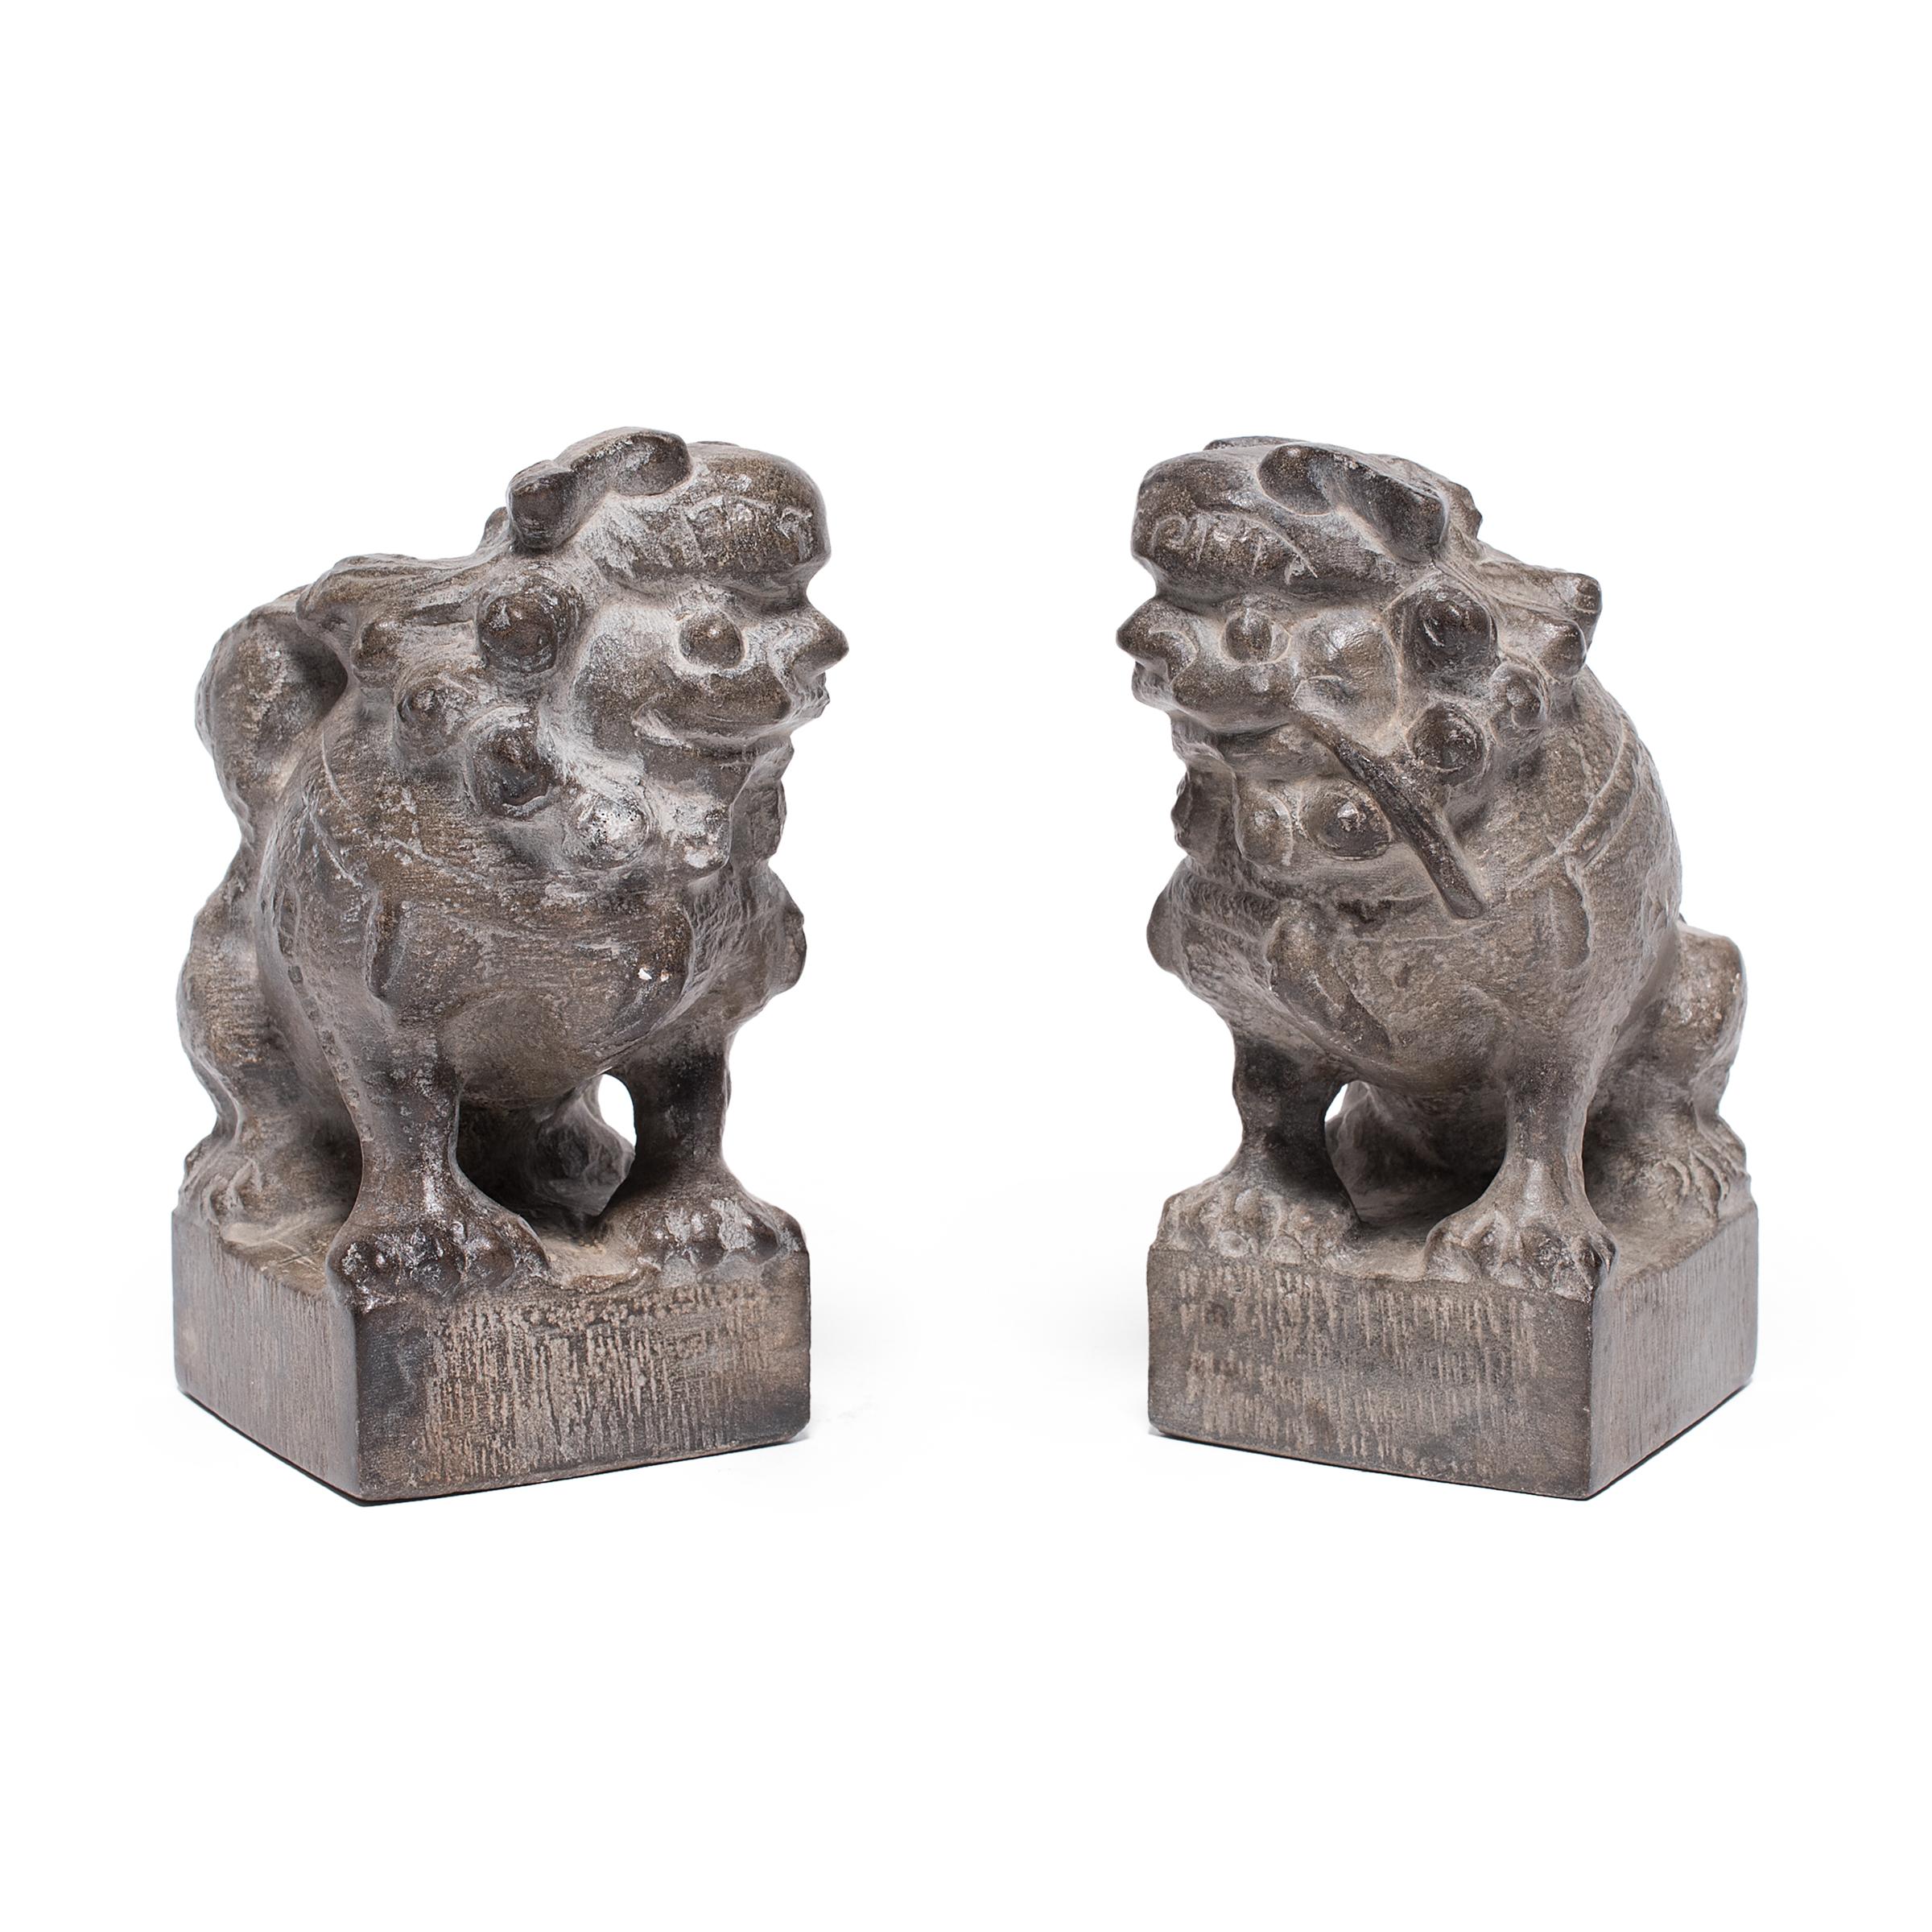 Avec leur crinière bouclée et leur expression enjouée, ces petits chiens de pierre sont d'adorables compagnons et des gardiens bienveillants de la maison. Également appelée shizi, la paire représente le yin et le yang, les forces duales de